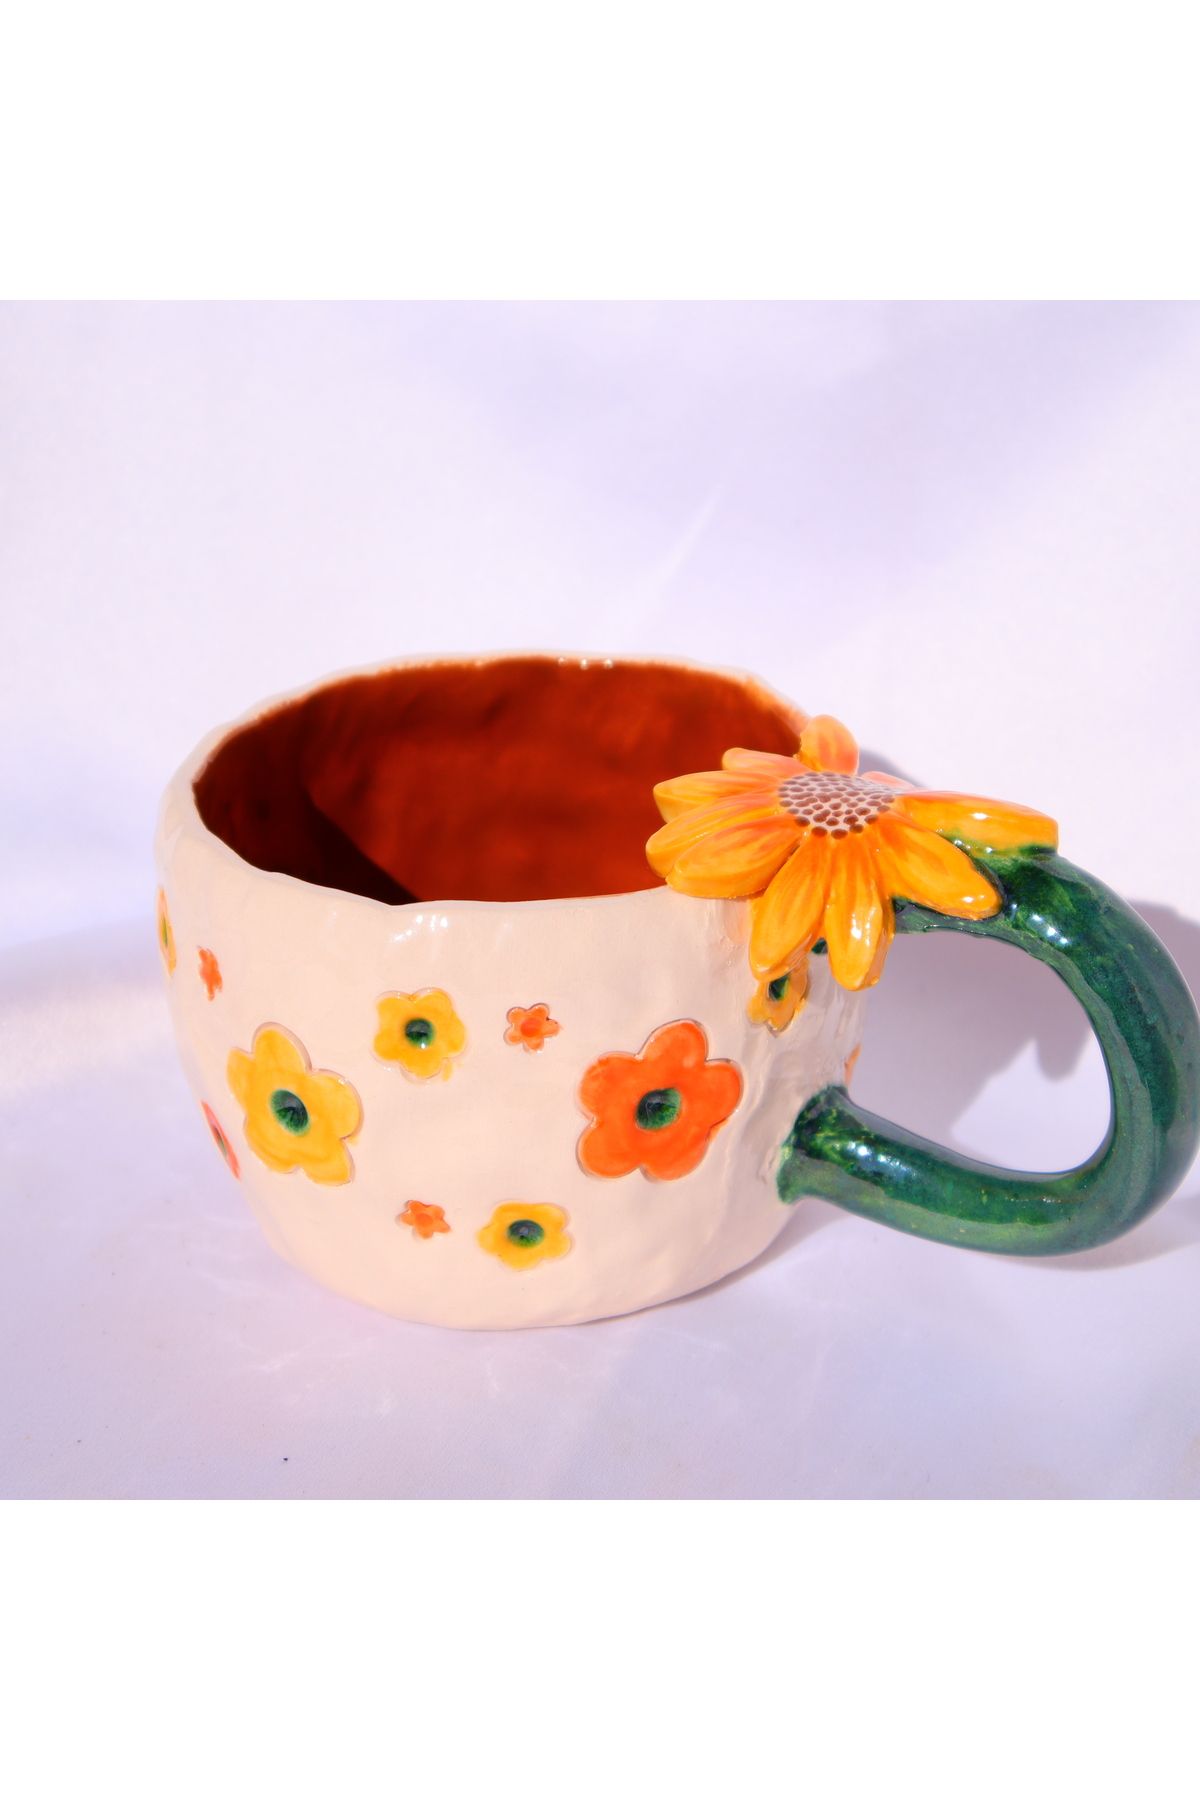 Lily & Loly Ceramics Özel Çiçek Tasarımlı, Çiçek Desenli Eşsiz El Yapımı Seramik Kupa - 200 ml